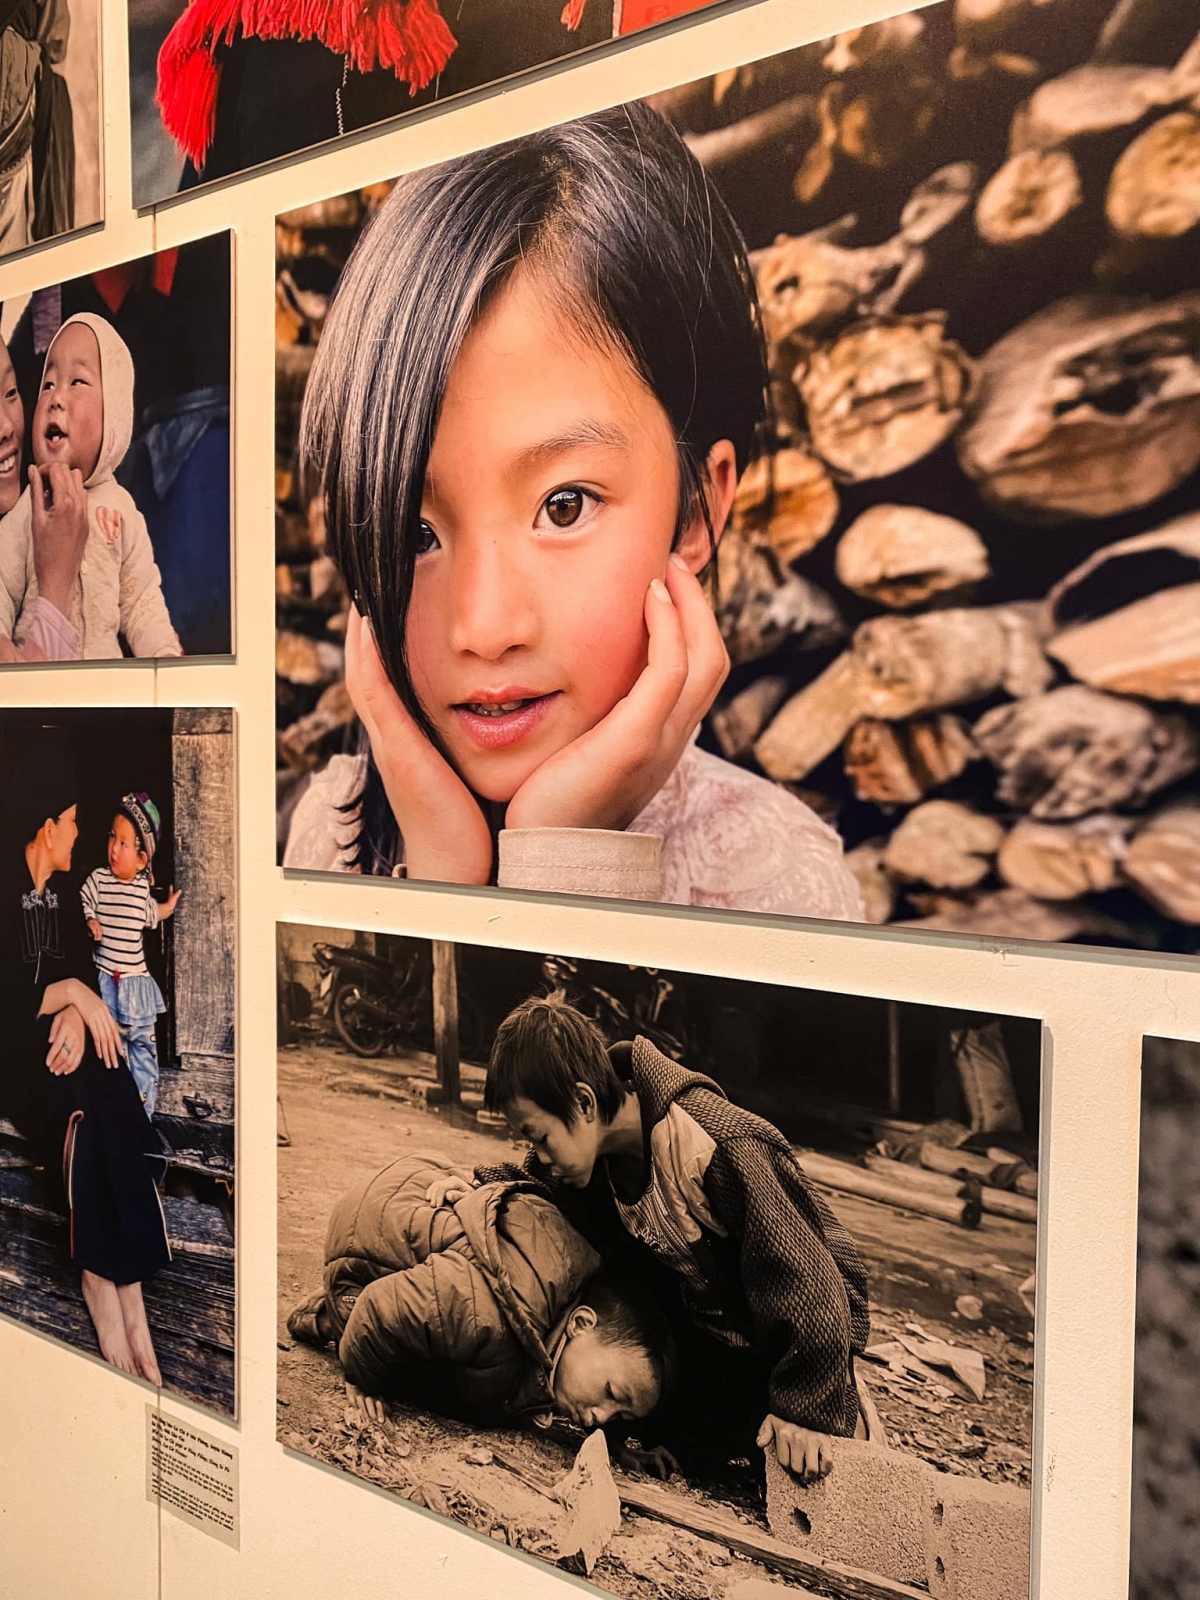 Trở về từ chuyến đi, nhà báo Bông Mai tổ chức triển lãm Dám sống một cuộc đời rực rỡ để kể lại hành trình đáng nhớ của mình.